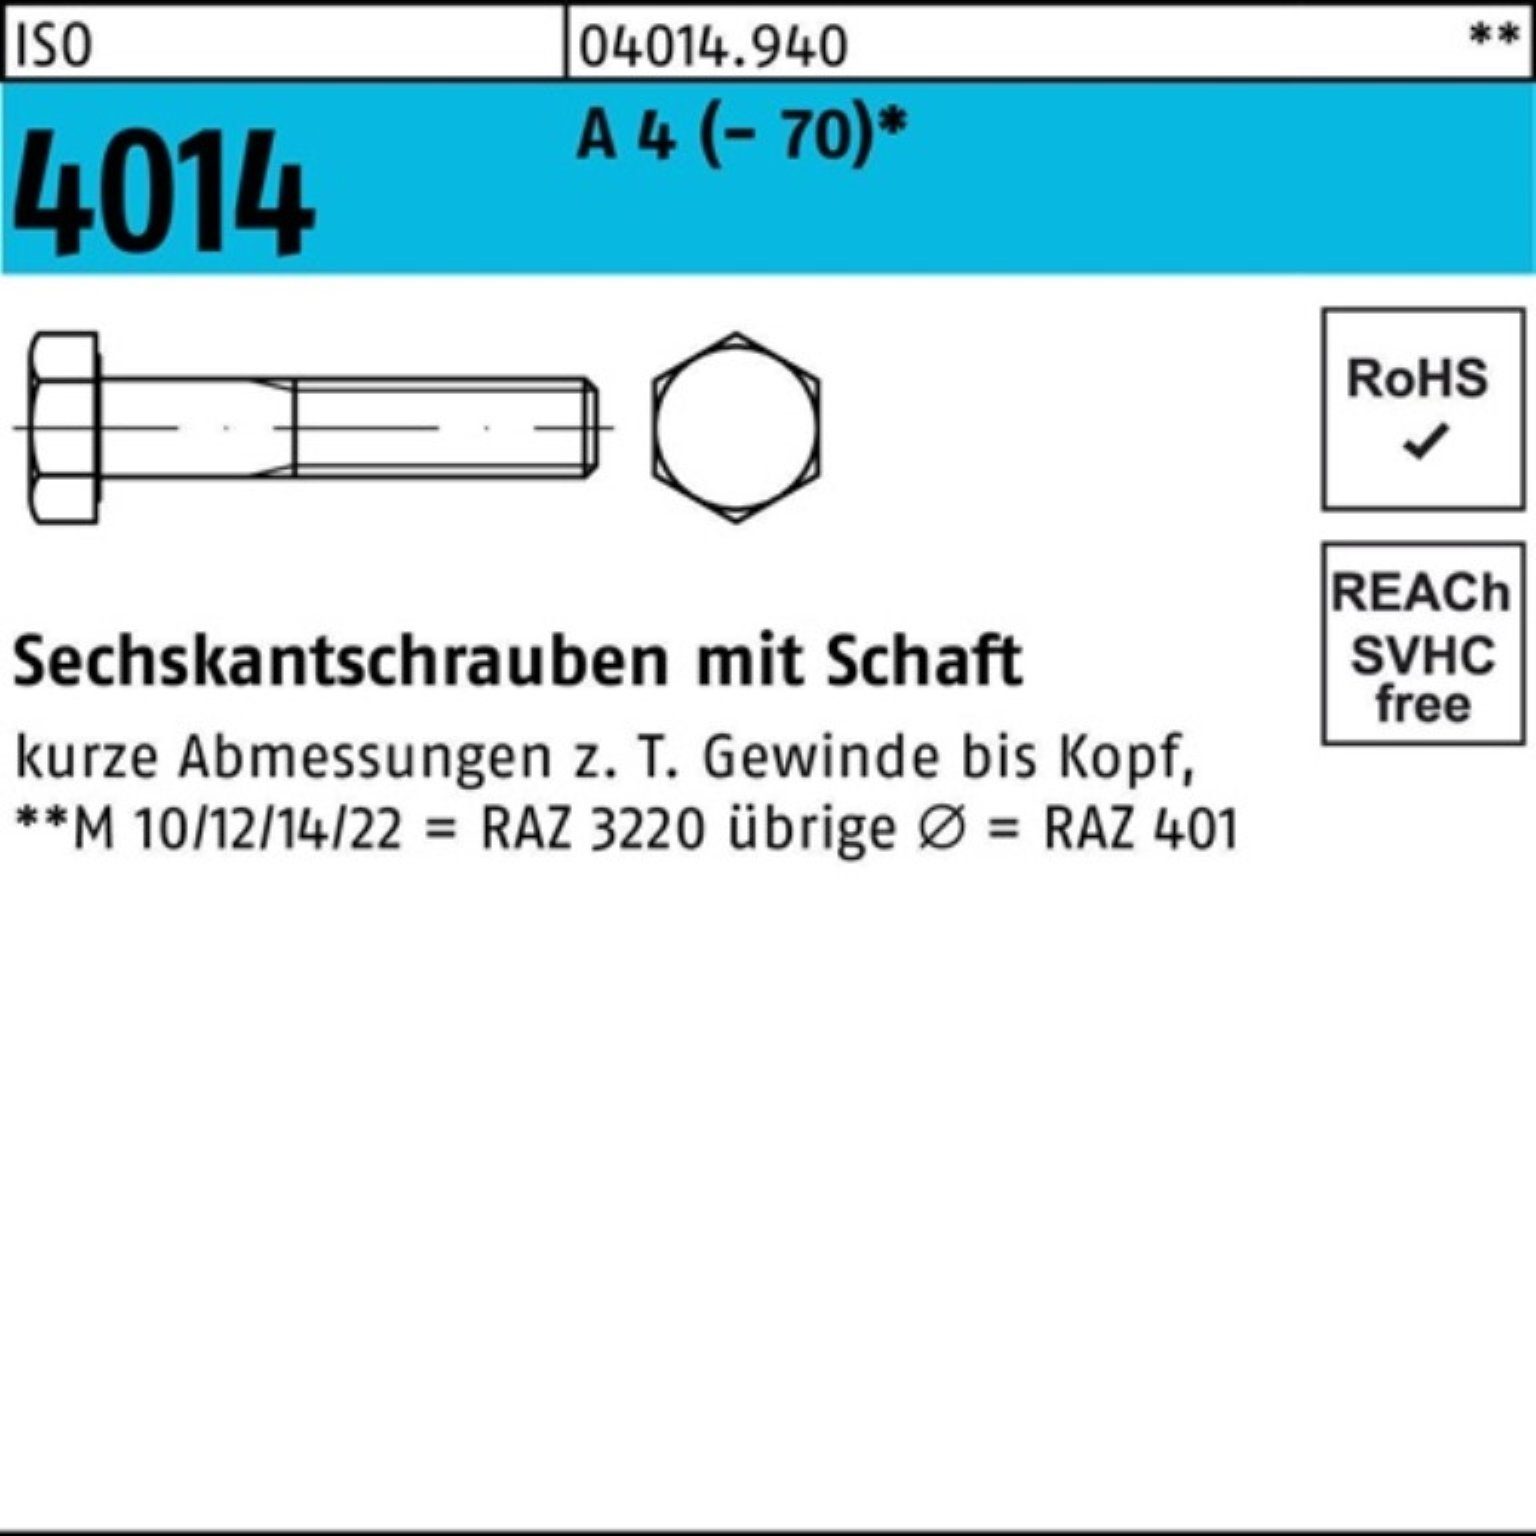 Schaft Sechskantschraube A St 4 (70) 100er Bufab ISO Sechskantschraube 180 1 4014 M16x Pack